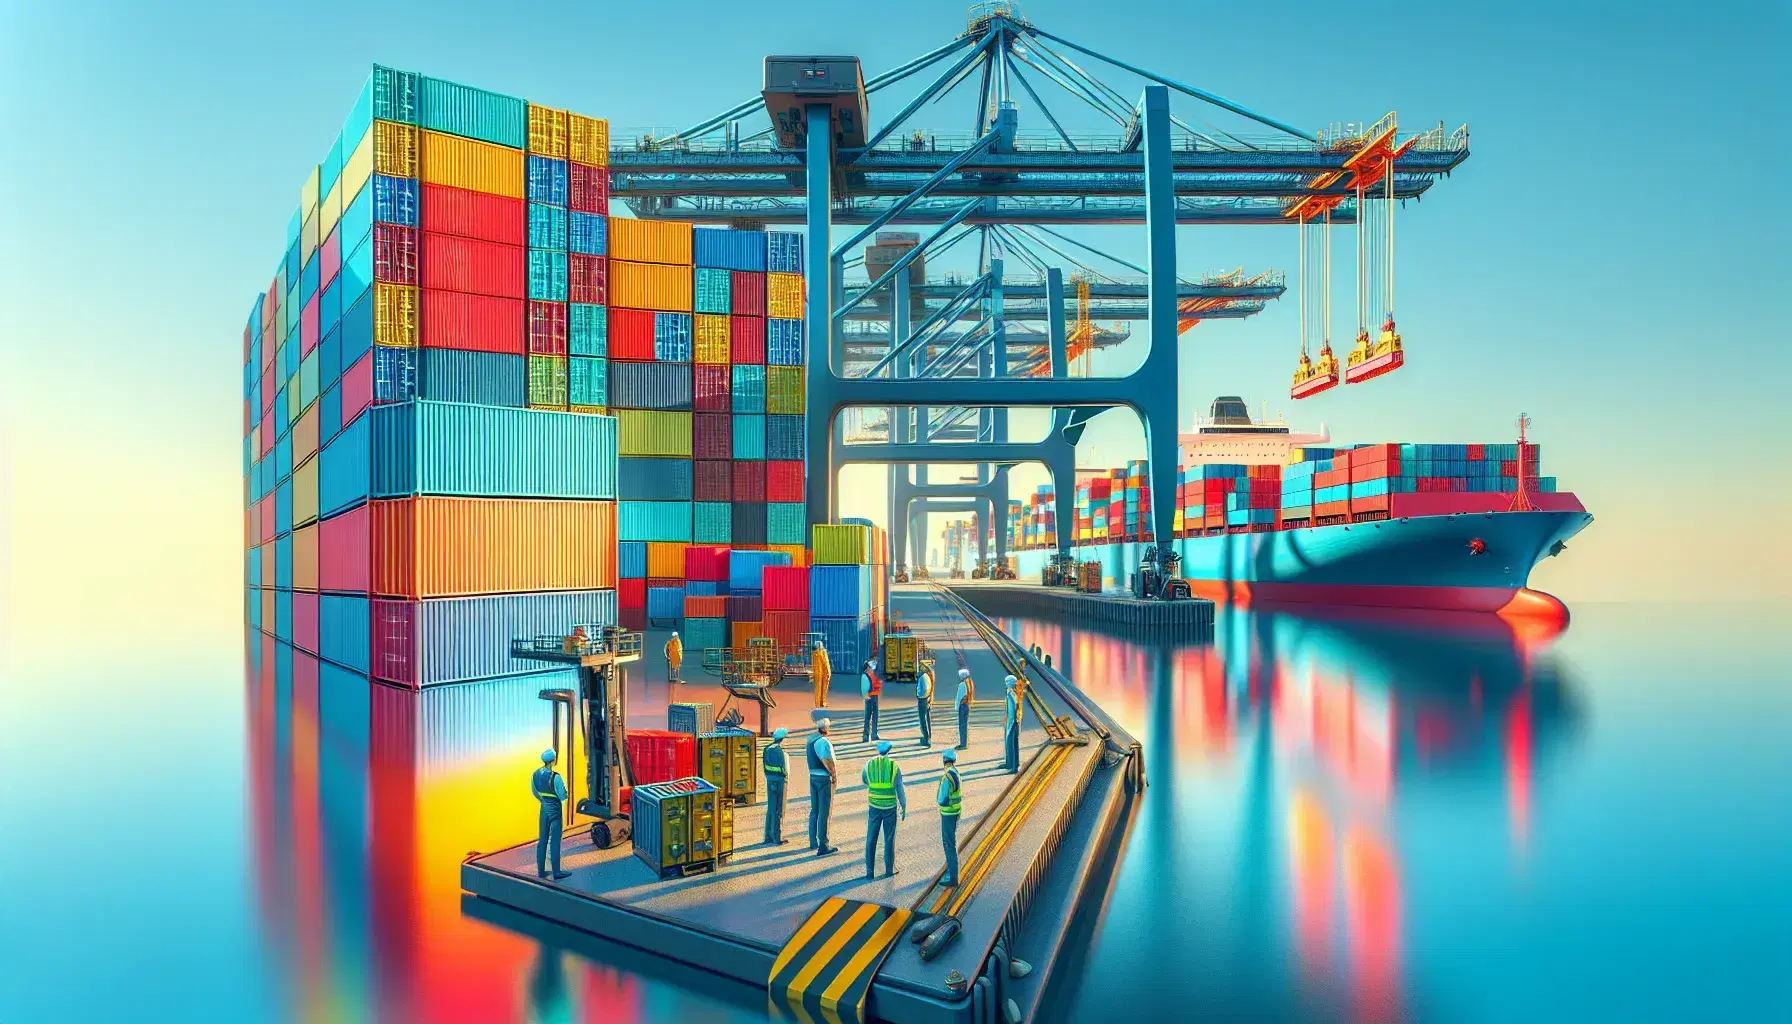 Puerto comercial con contenedores de colores apilados, grúa portuaria en operación y trabajadores supervisando bajo un cielo despejado.